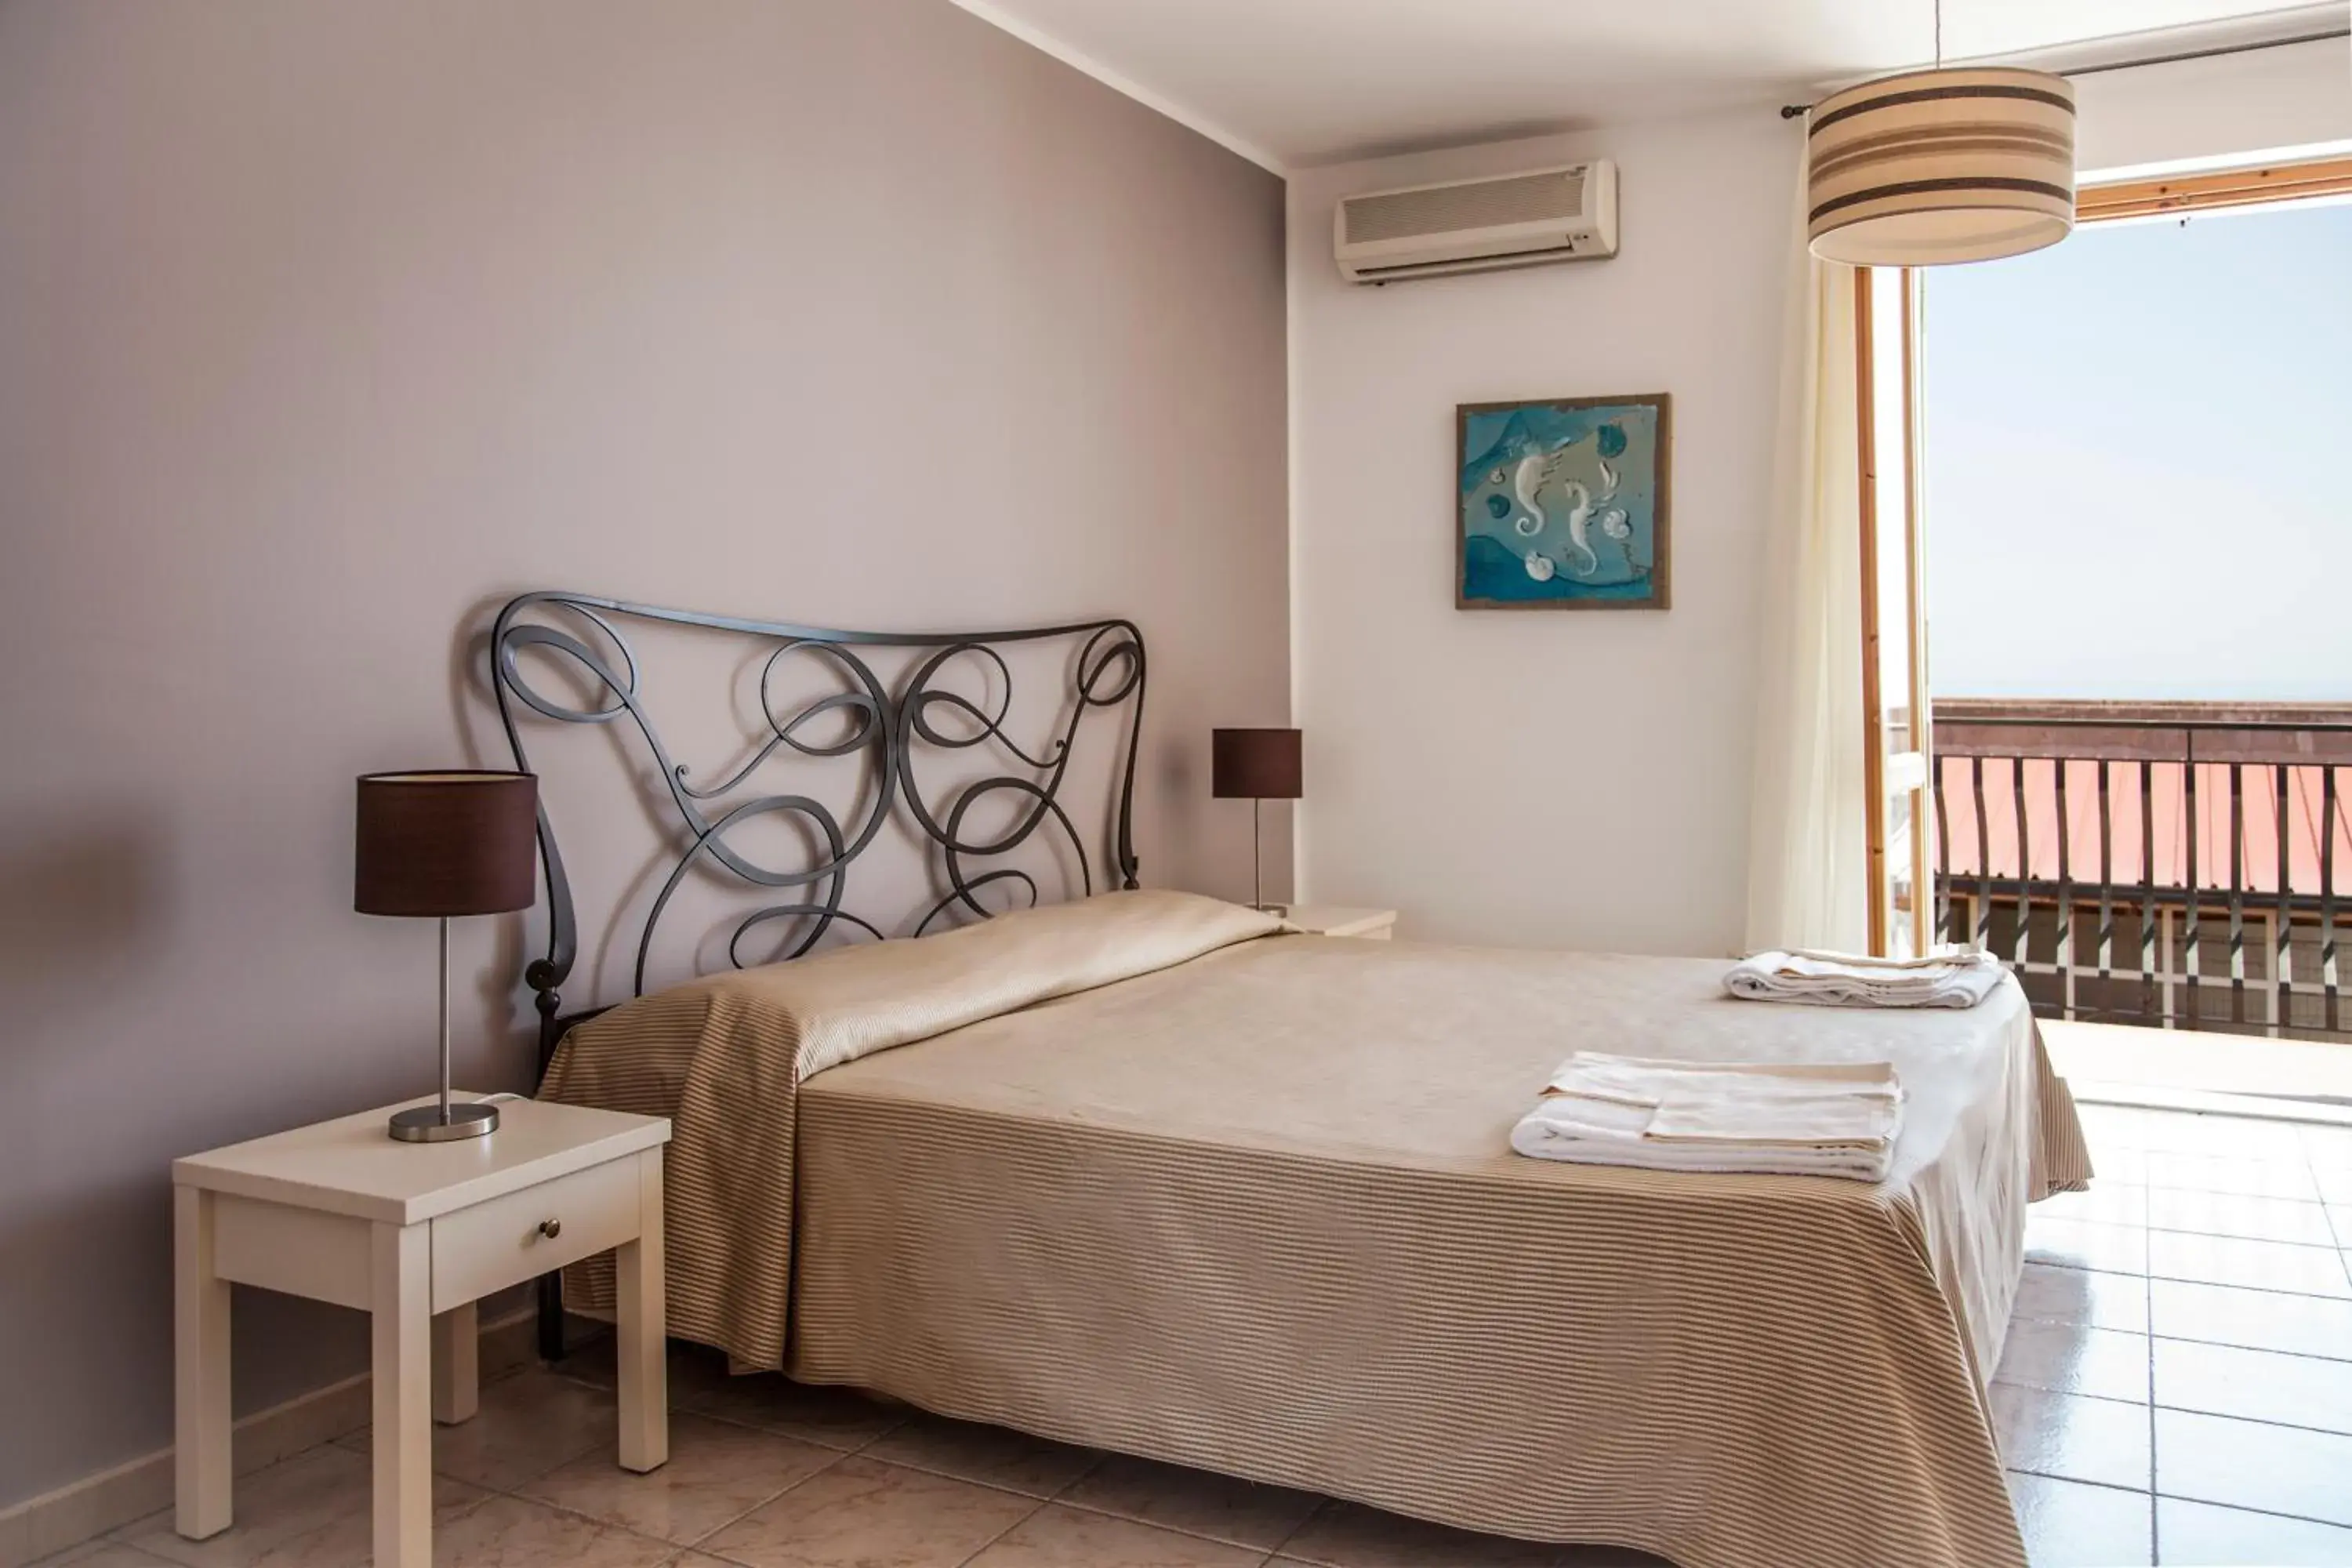 Bedroom, Room Photo in Hotel Amarea